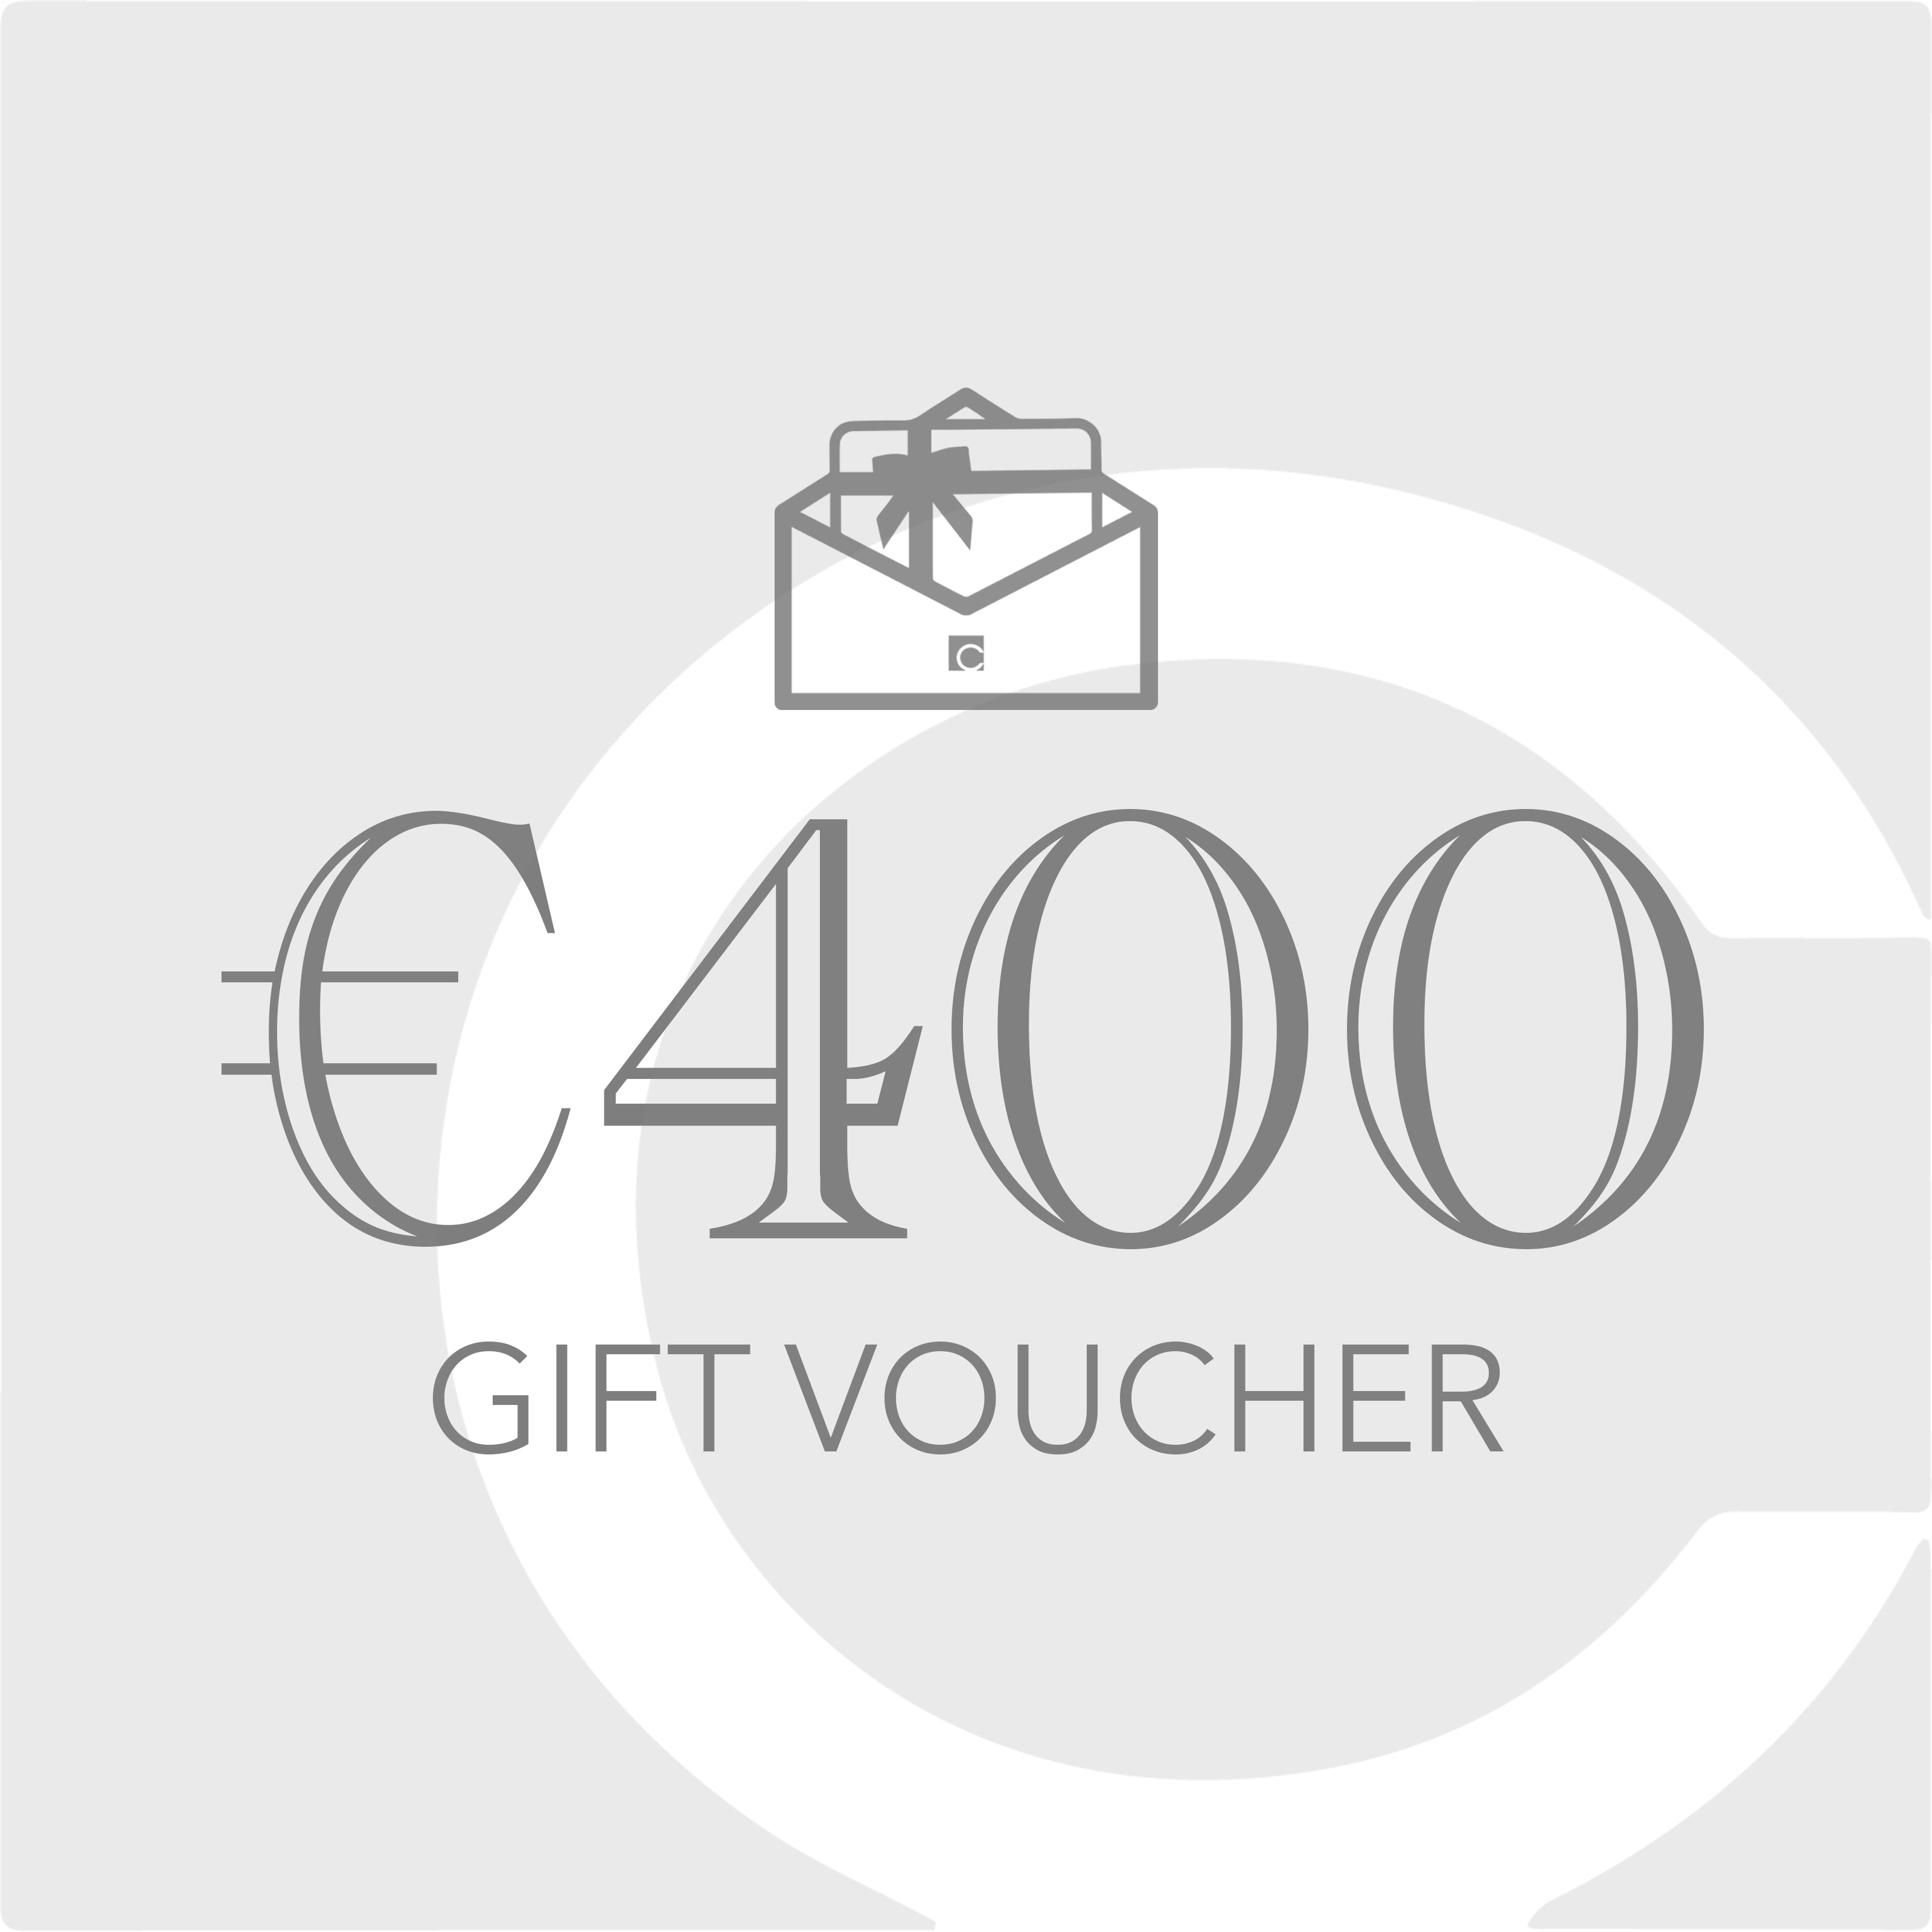 €400 Gift Voucher